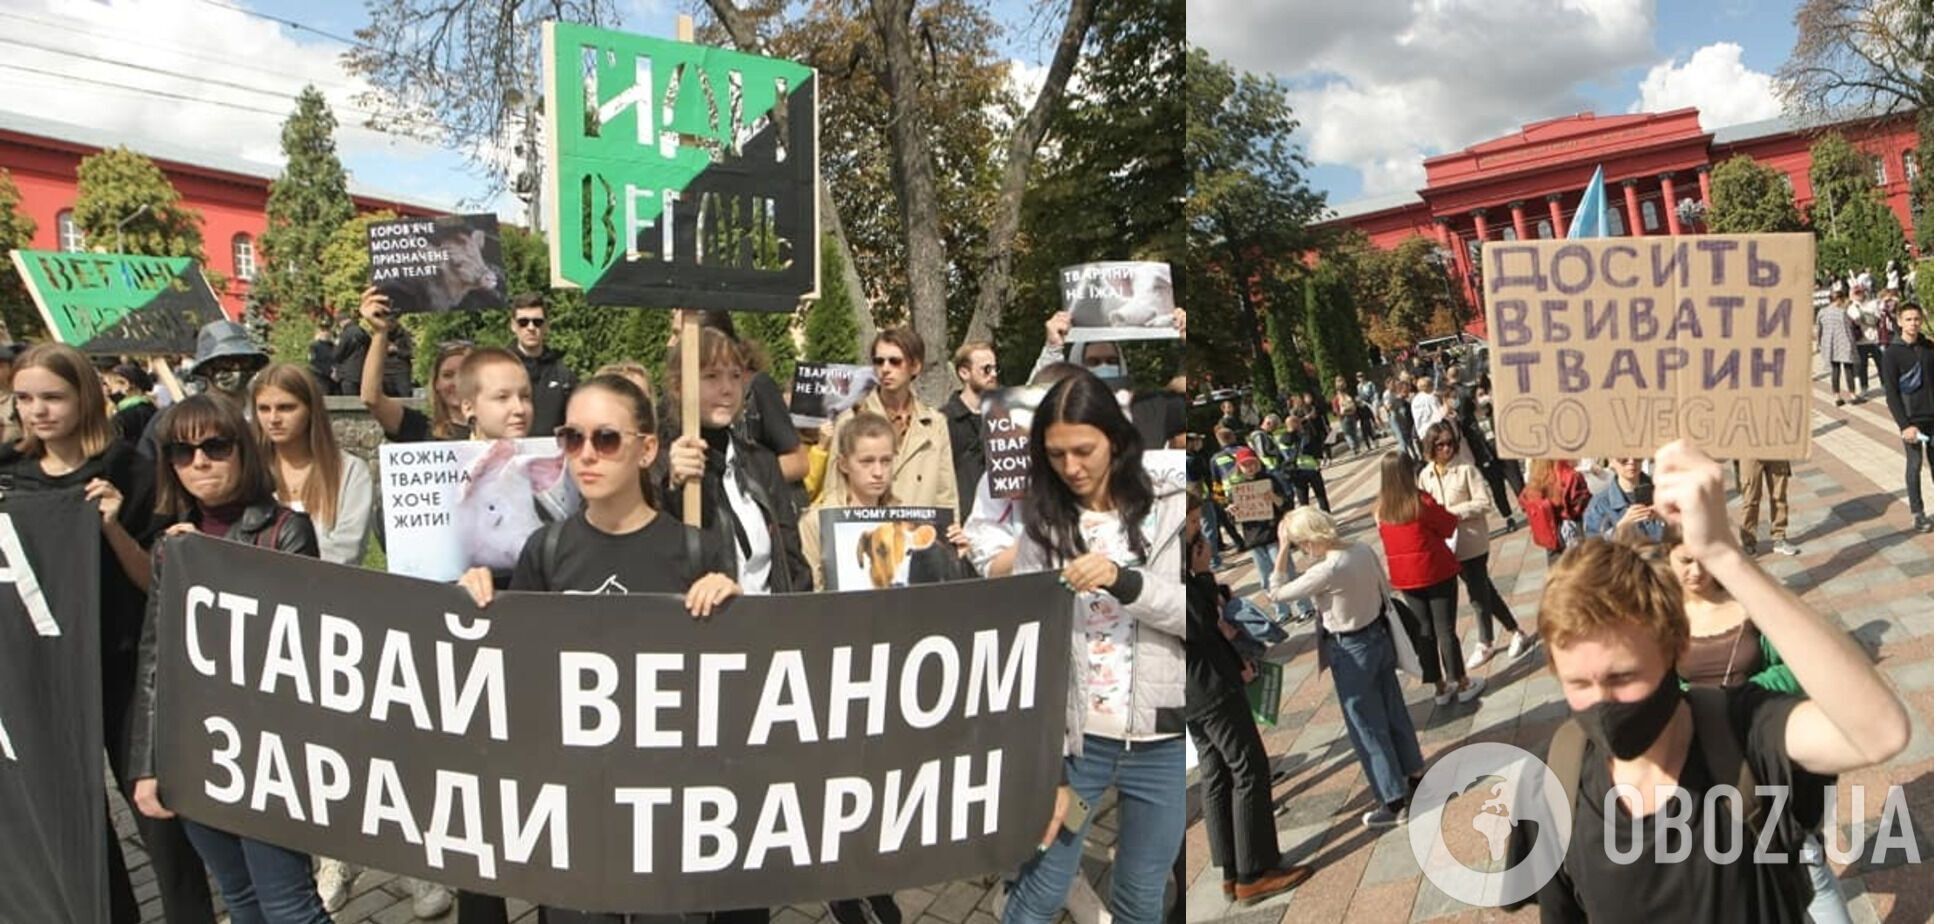 Участники призвали спасать животных в Украине от жестокого обращения